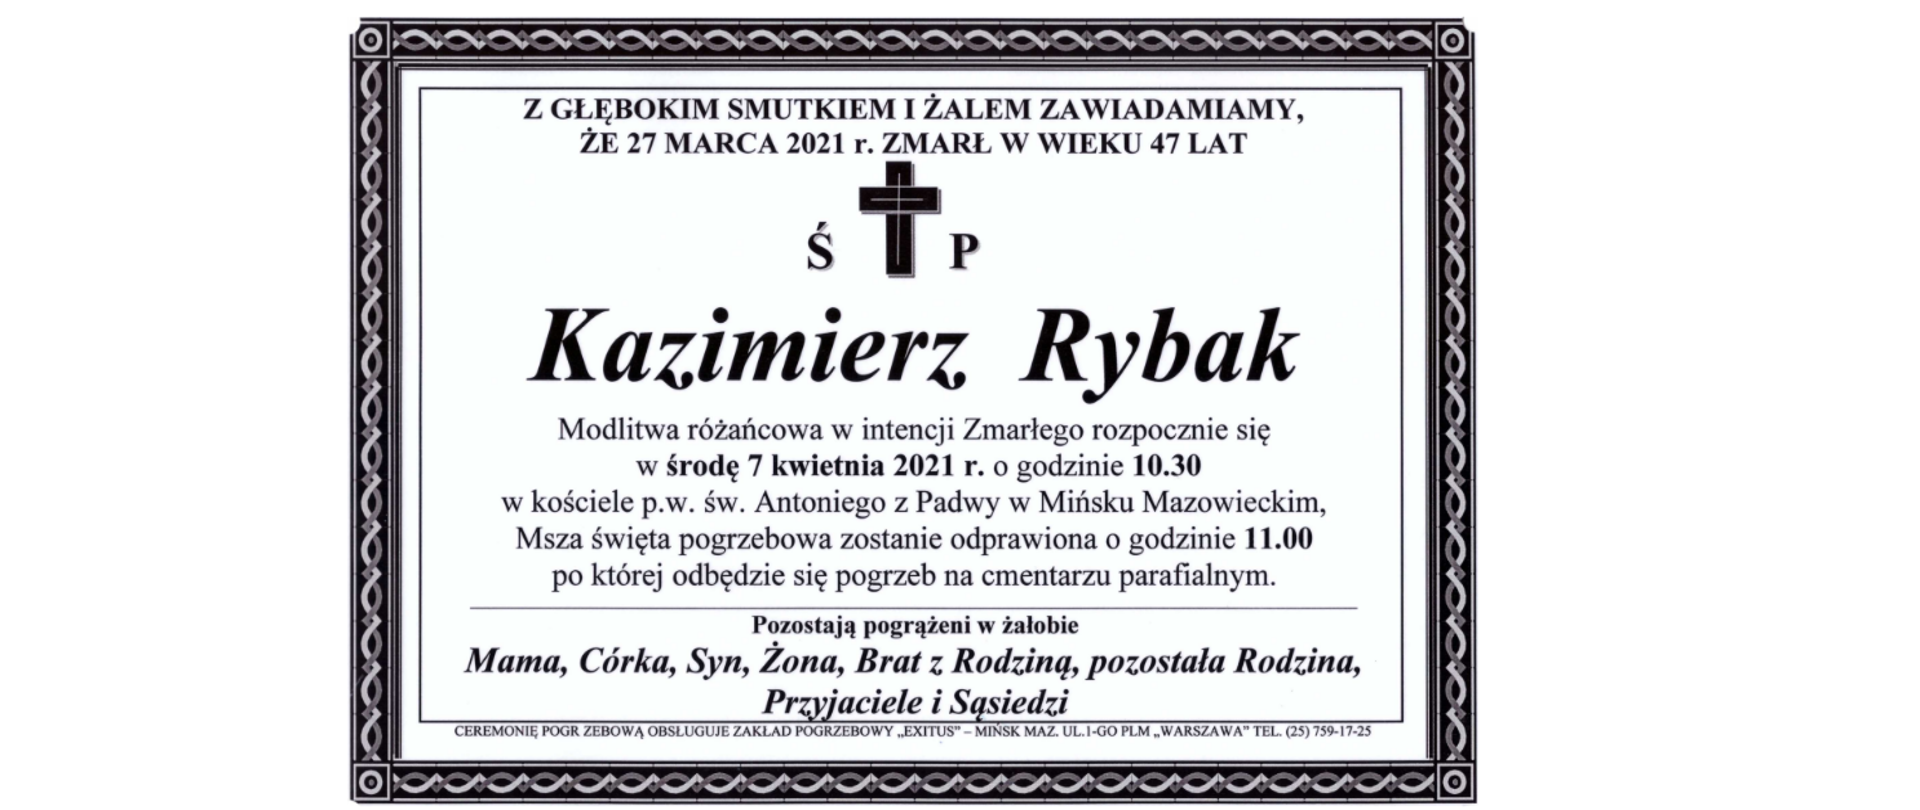 Z głębokim smutkiem i żalem zawiadamiamy, że 27 marca 2021 roku zmarł w wieku 47 lat świętej pamięci Kazimierz Rybak. Modlitwa różańcowa w intencji Zmarłego rozpocznie się w środę 7 kwietnia 2021 r. o godzinie 10.30 w kościele pod wezwaniem świętego Antoniego z Padwy w Mińsku Mazowieckim,. Msza święta pogrzebowa zostanie odprawiona o godzinie 11.00, po której odbędzie się pogrzeb na cmentarzu parafialnym. Pozostają pogrążeni w żałobie Mama, Córka, Syn, Żona, Brat z Rodziną, pozostała Rodzina, Przyjaciele i Sąsiedzi